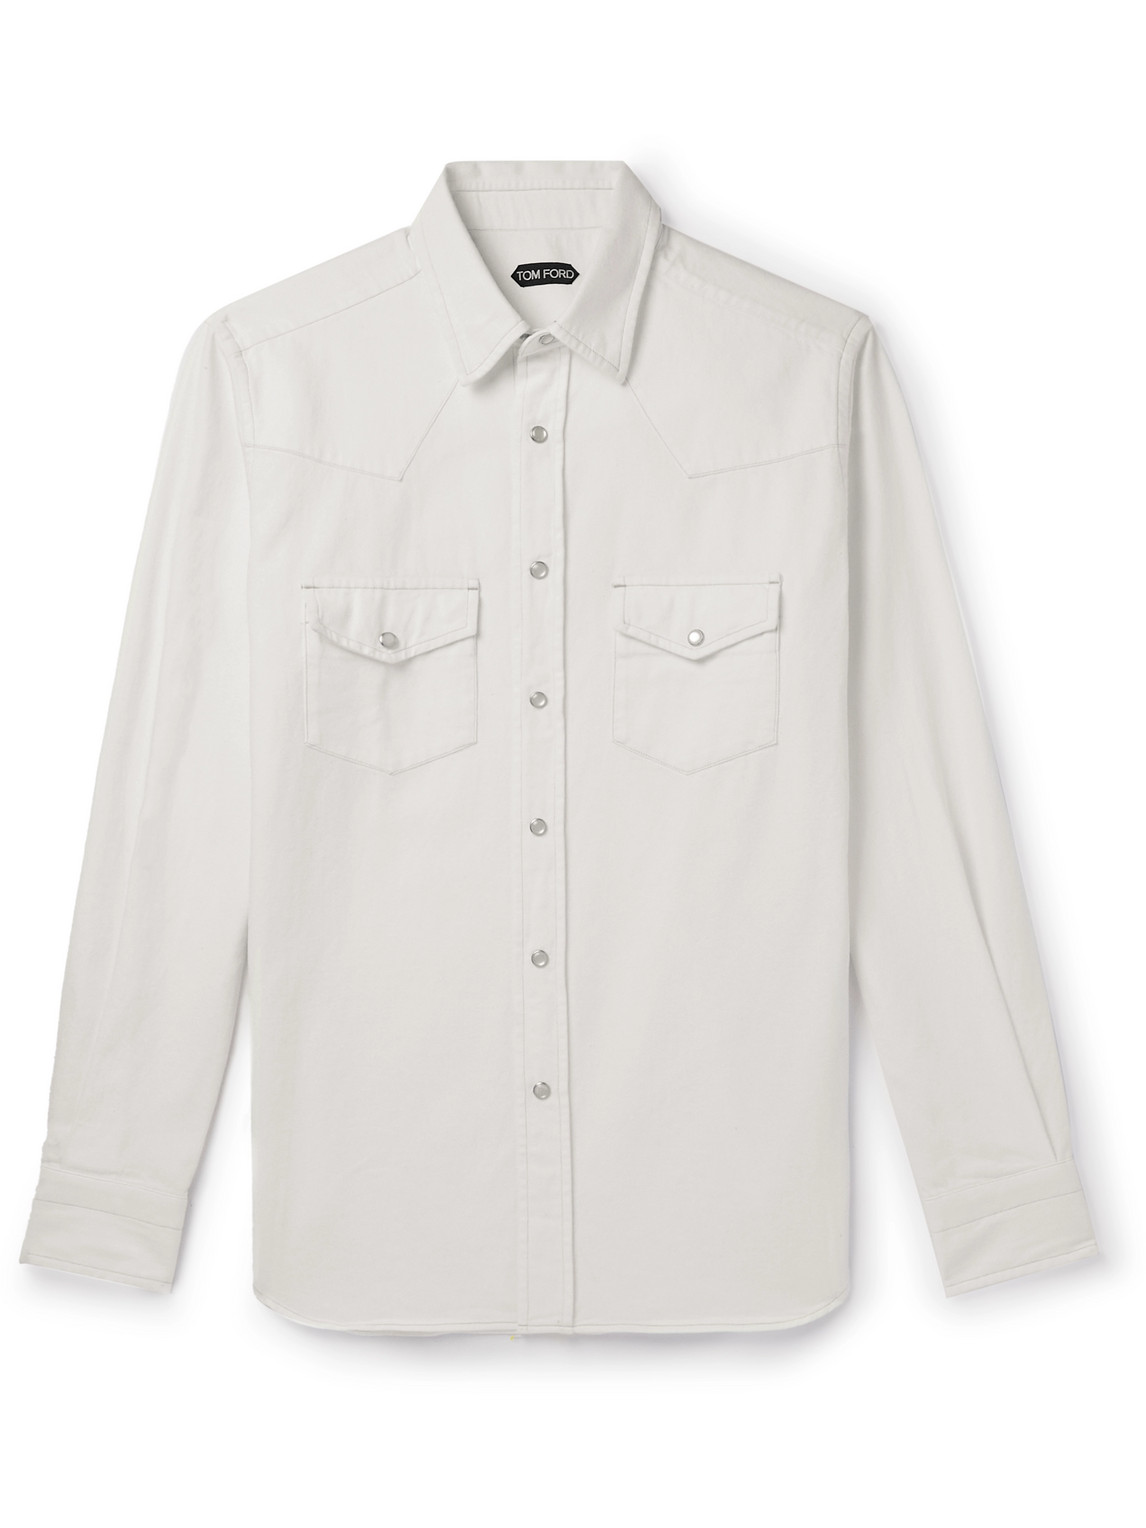 Tom Ford Denim Shirt In White | ModeSens